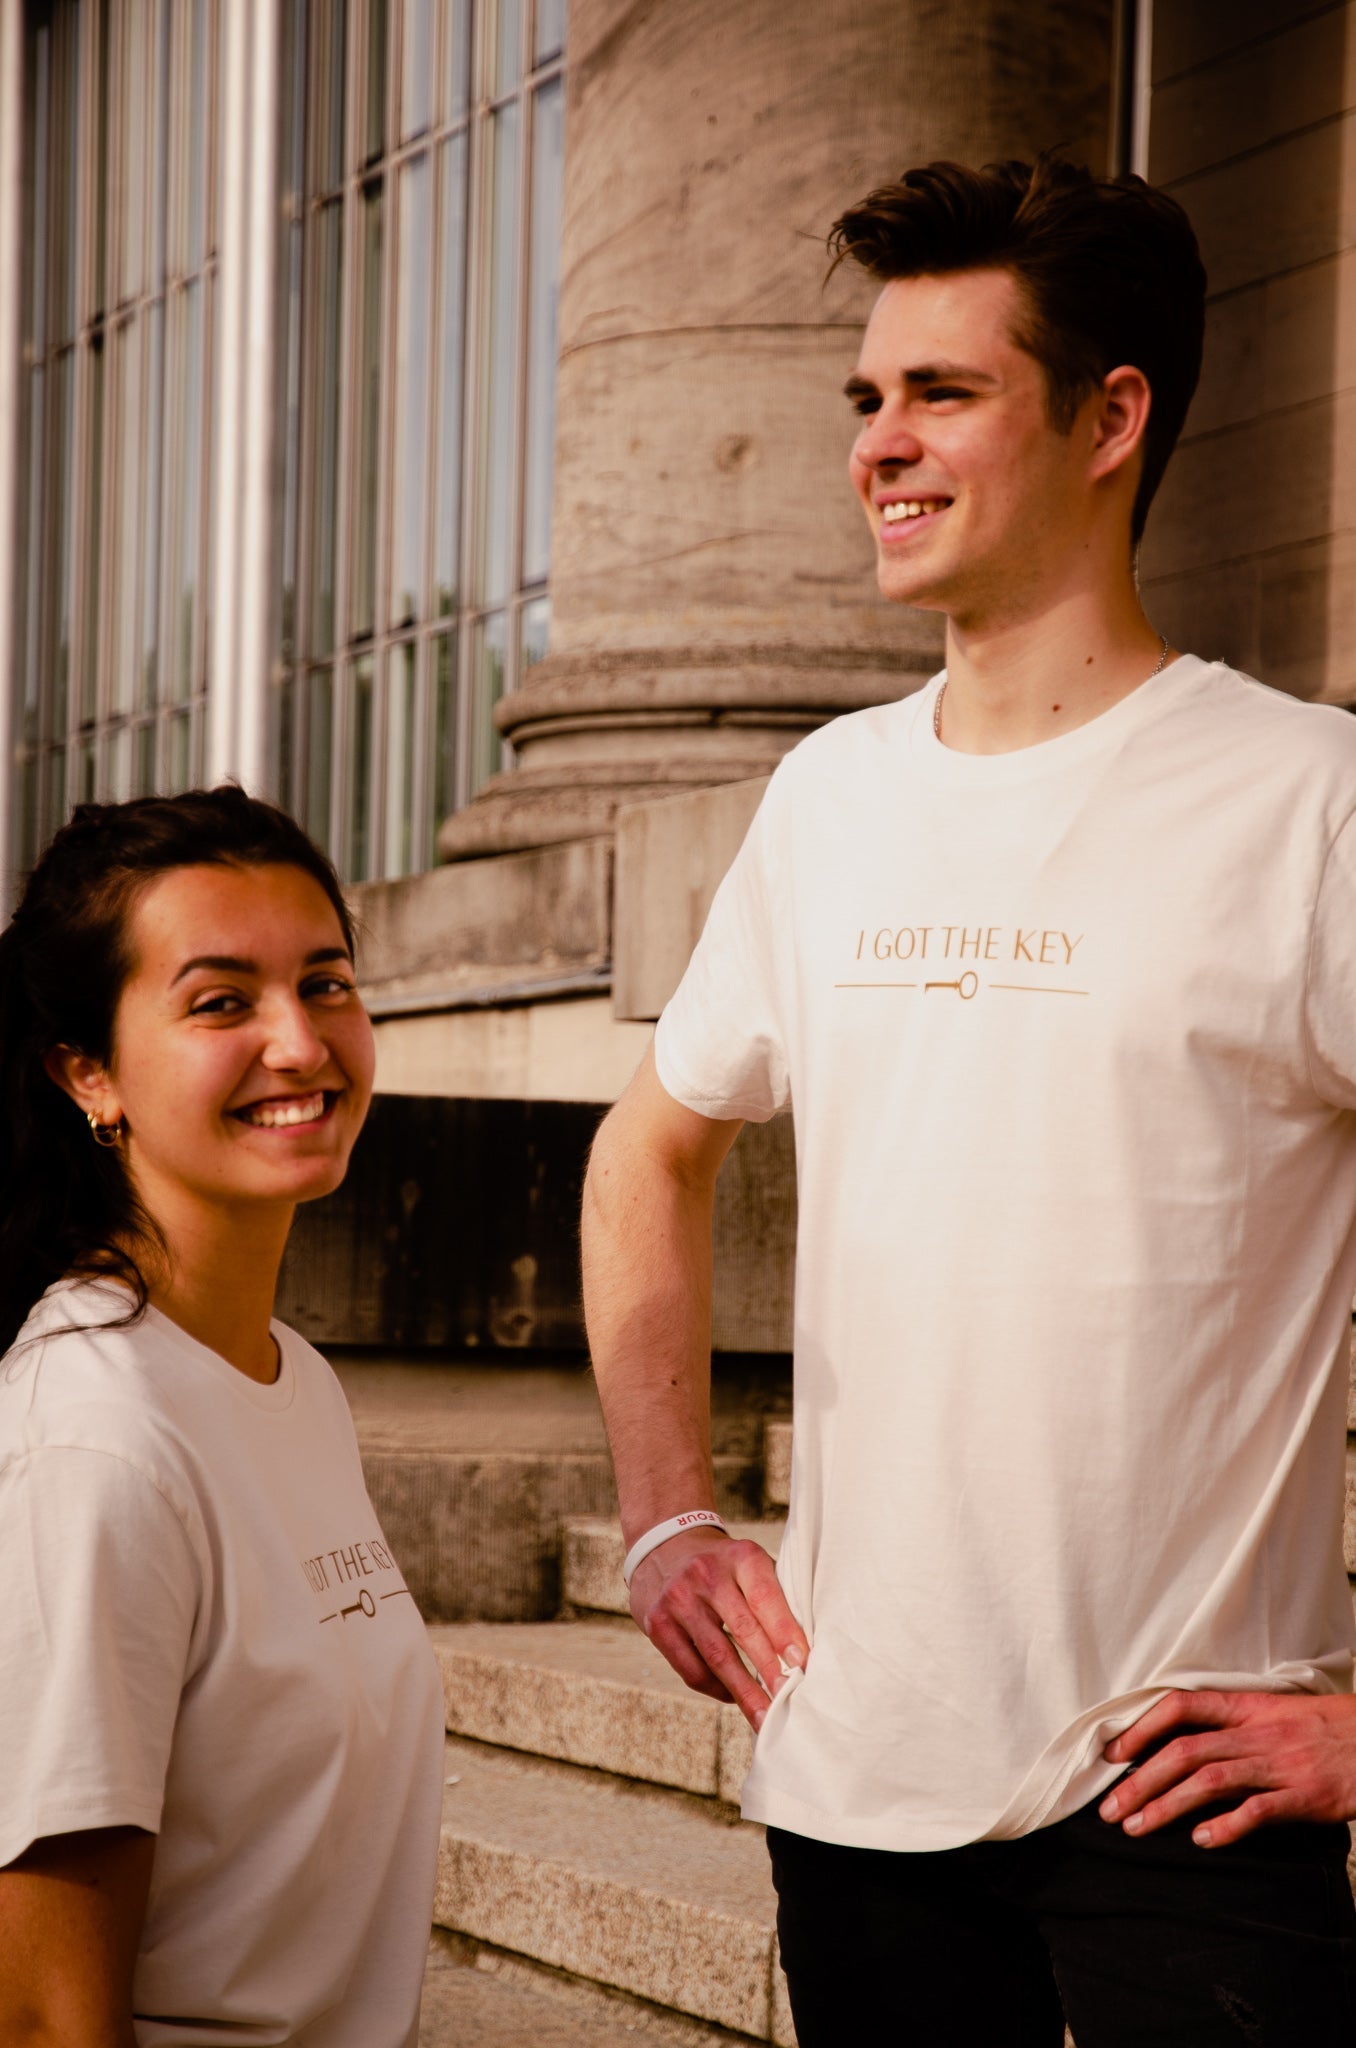 Frau und Mann tragen beide ein cremeweißes T-Shirt mit goldenem I GOT THE KEY Druck